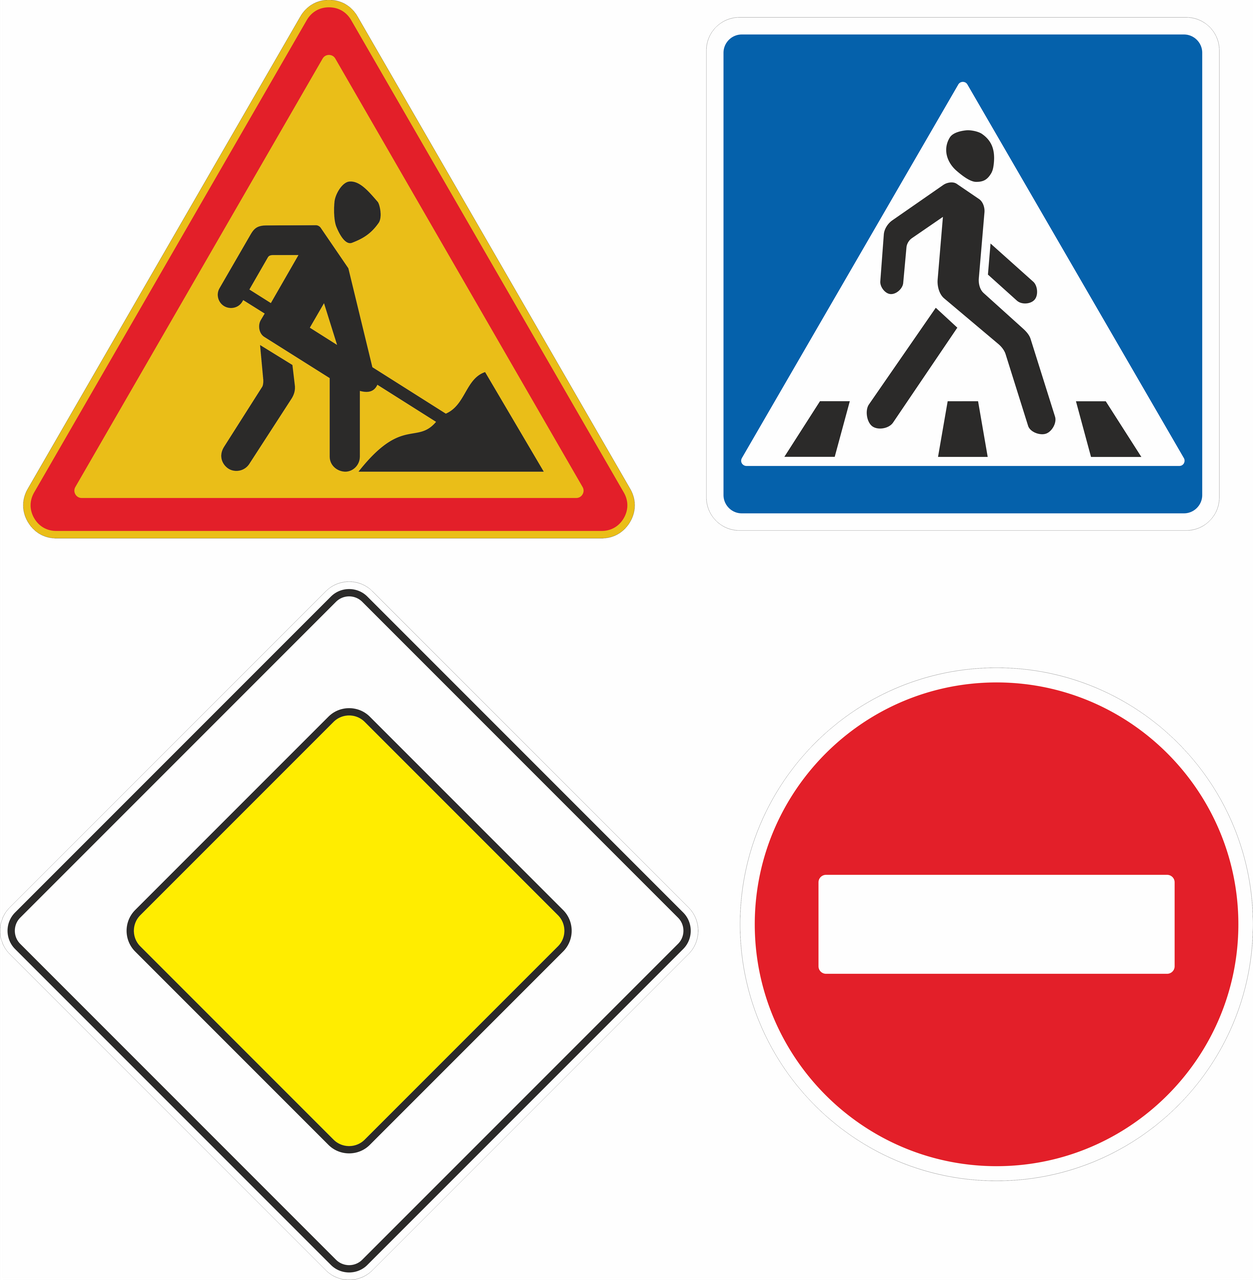 Элементы дорожных знаков. Дорожные знаки. Экознаки дорожного движения. Знакидорлжного движения. Знаки дорожнеготдвижения.